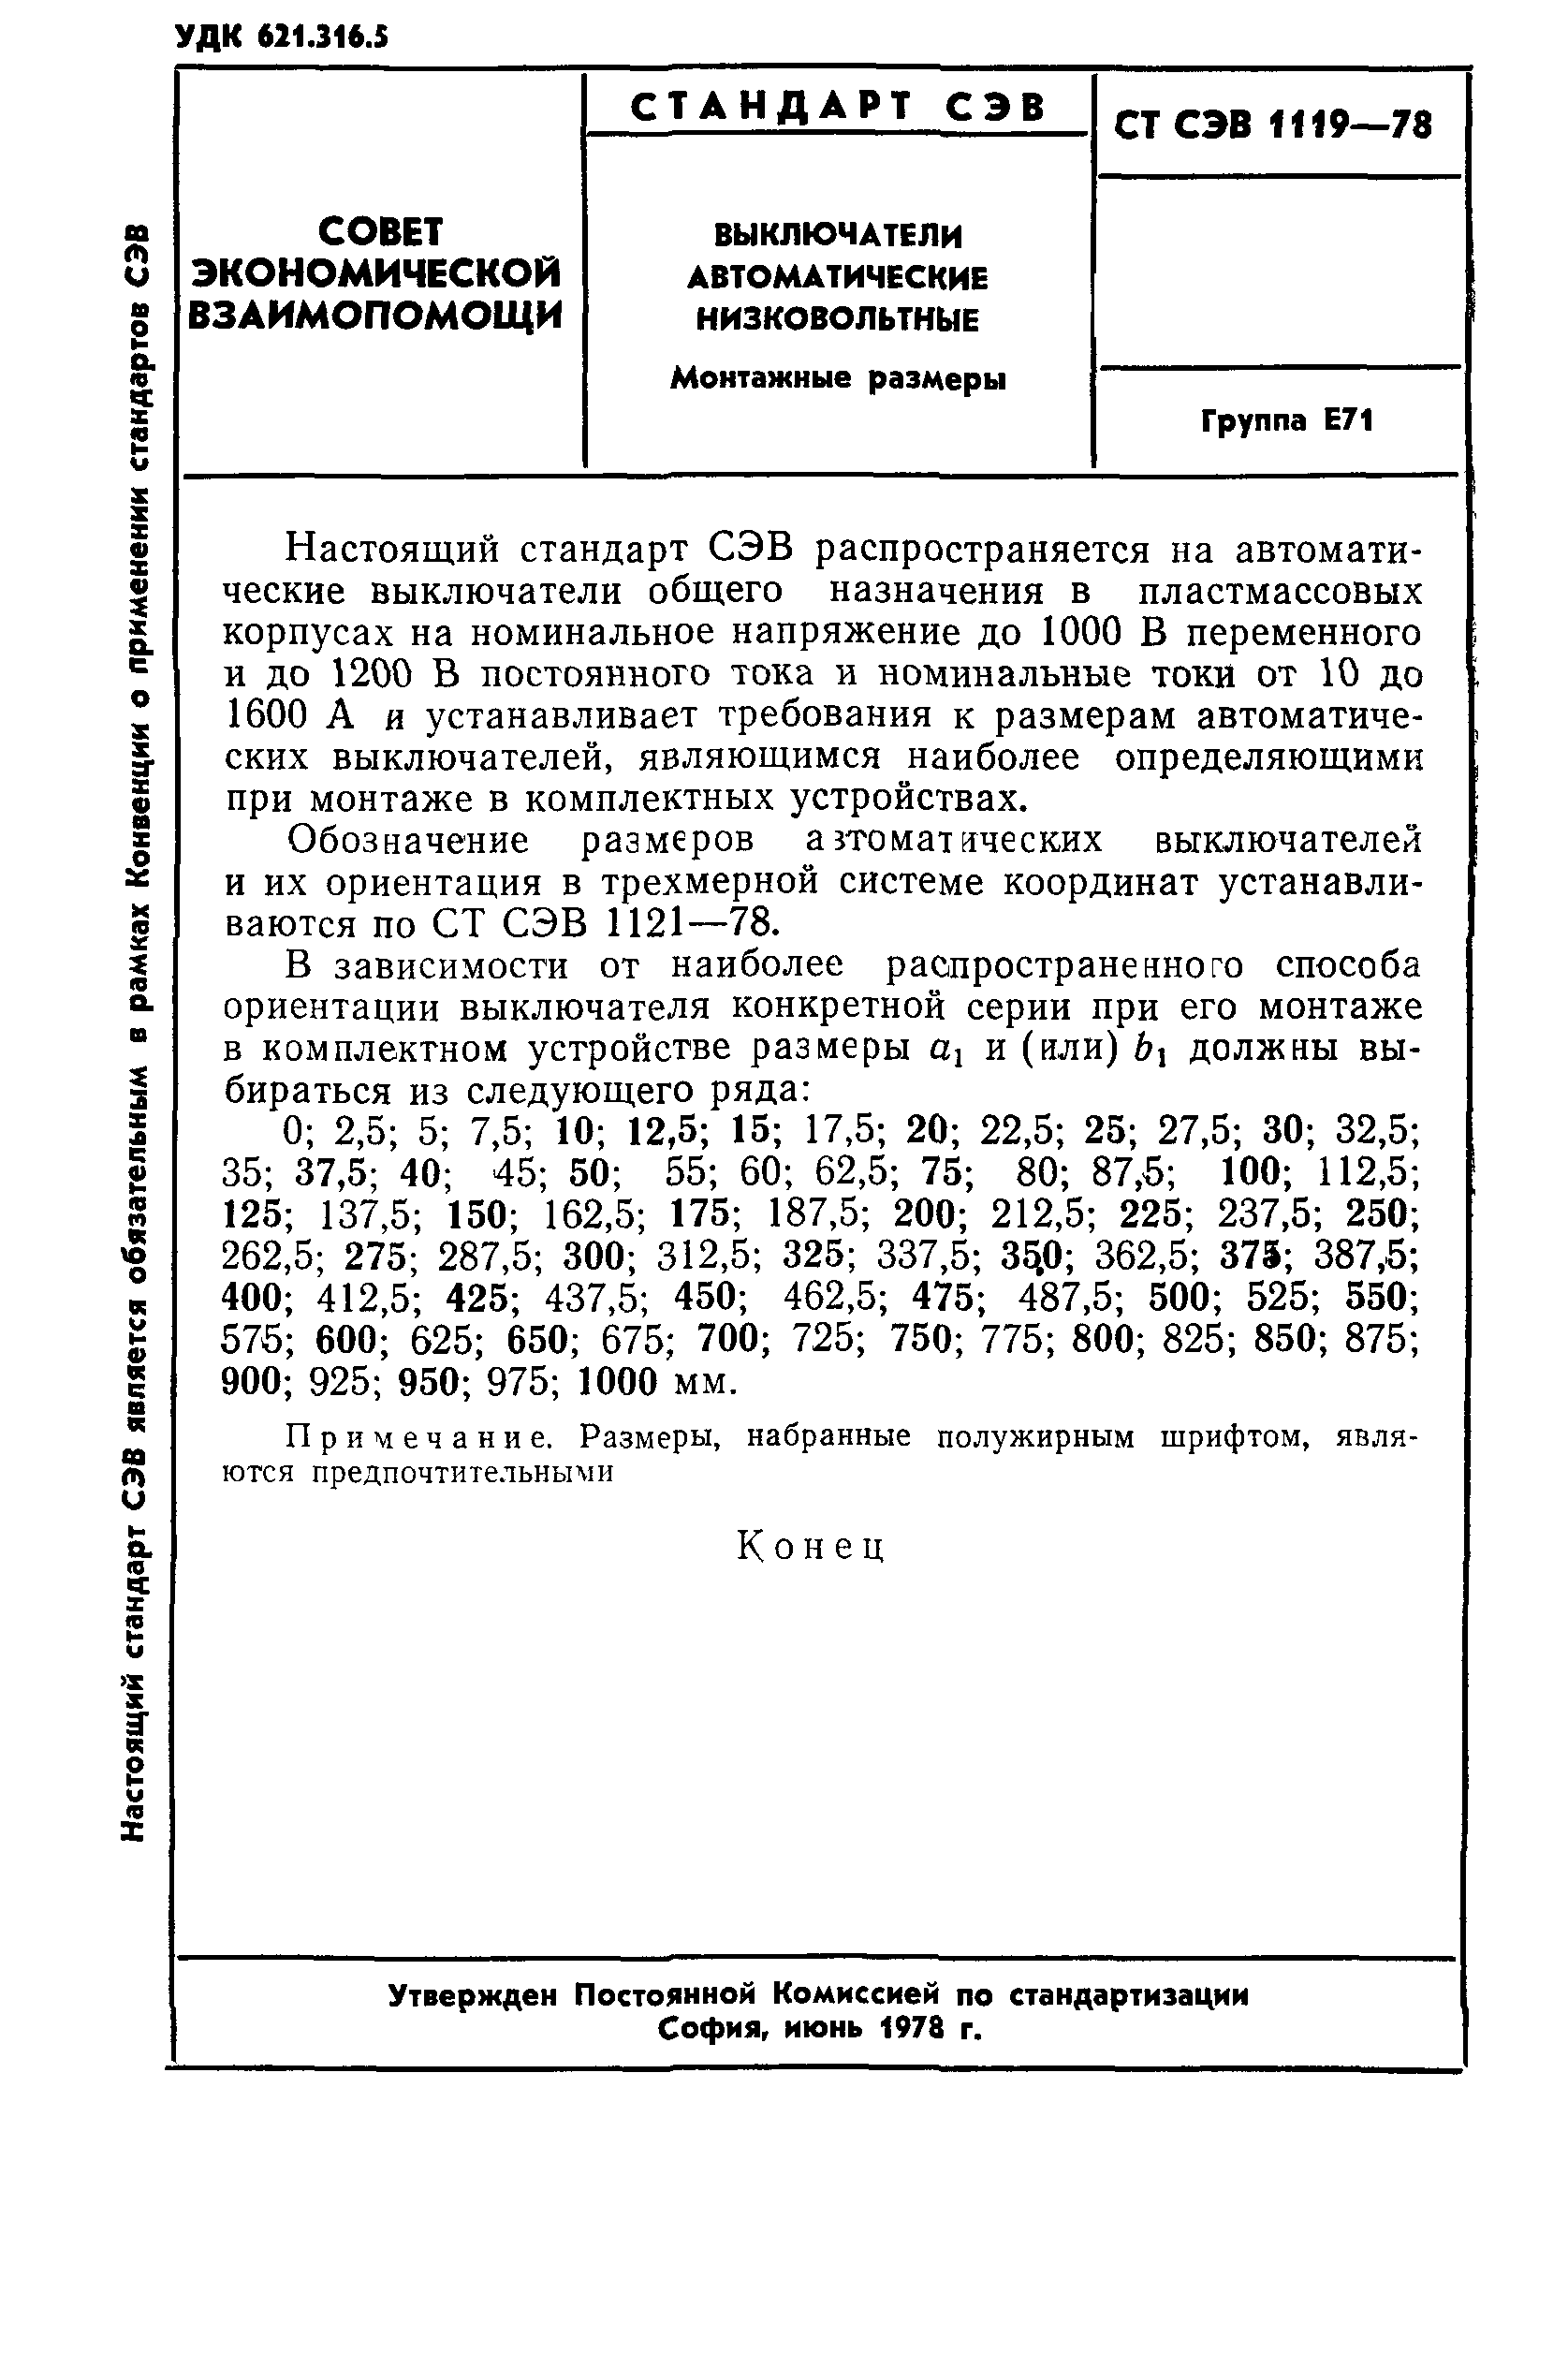 СТ СЭВ 1119-78